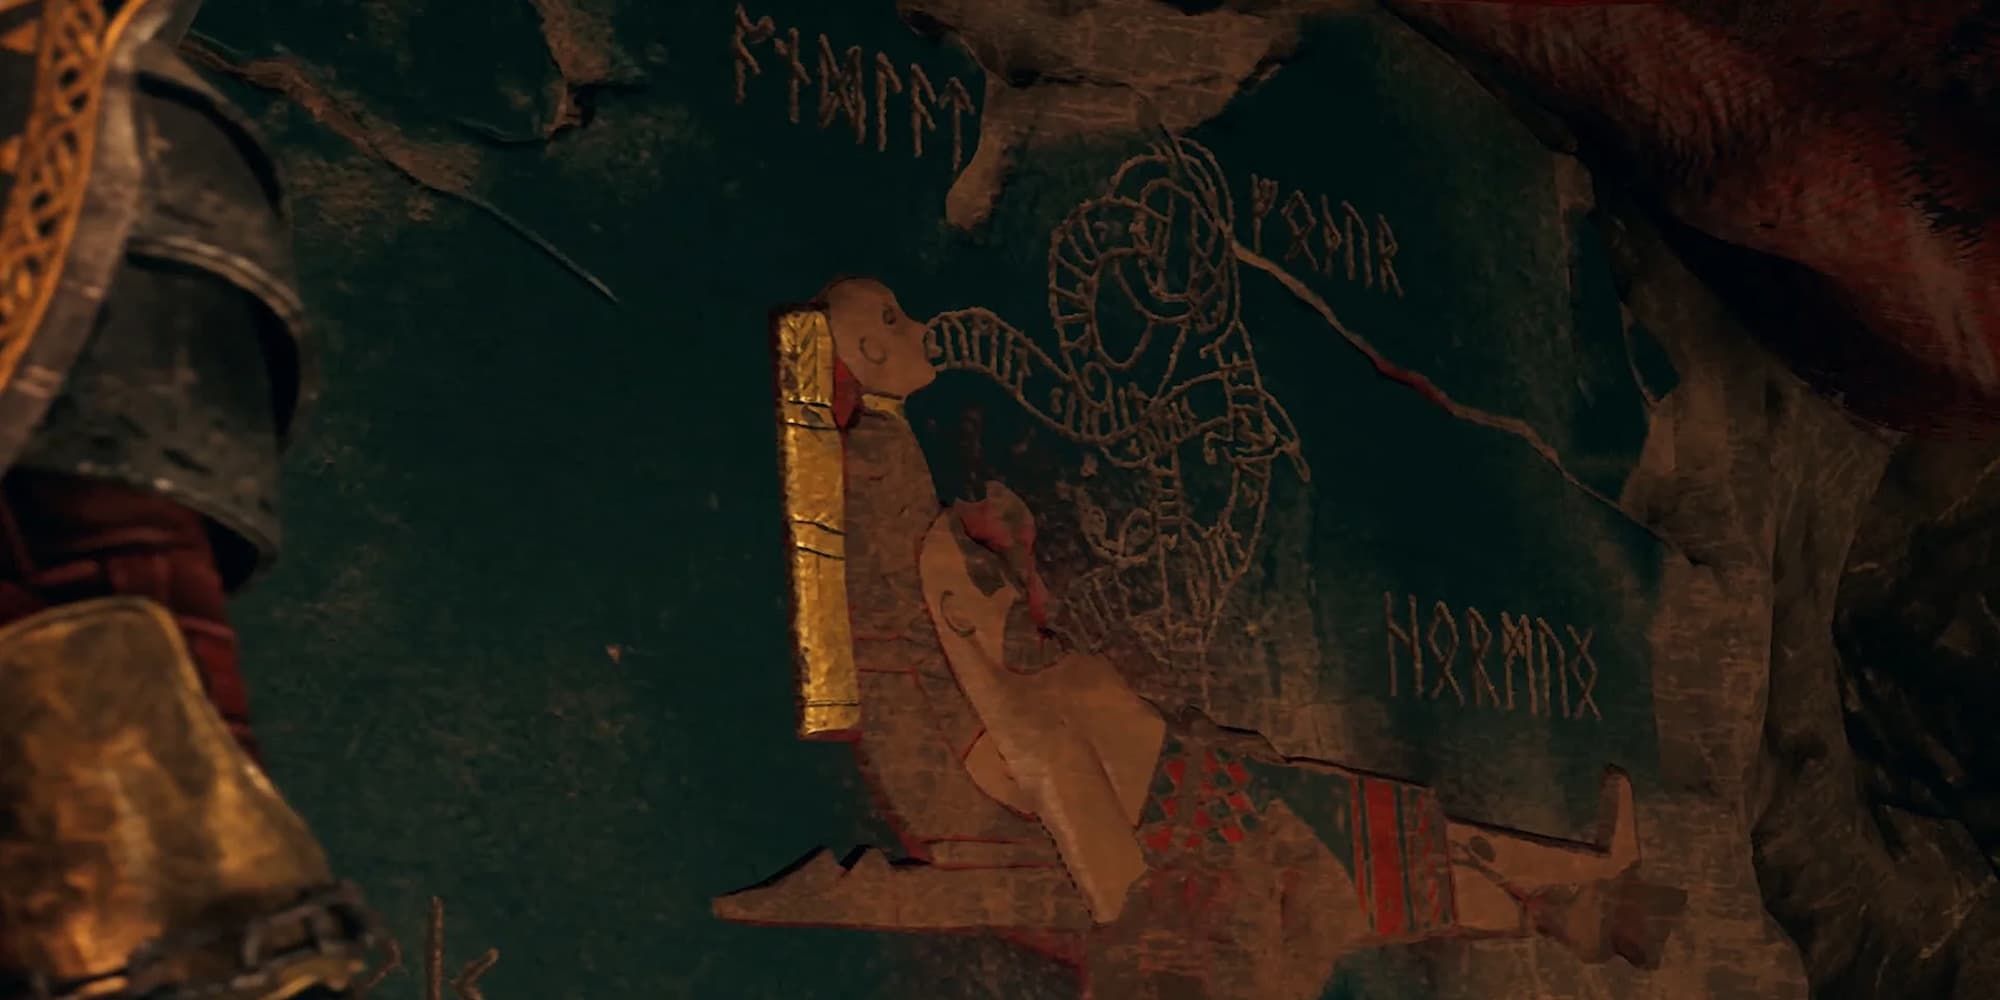 God of War Mural Depicting Atreus and A Man